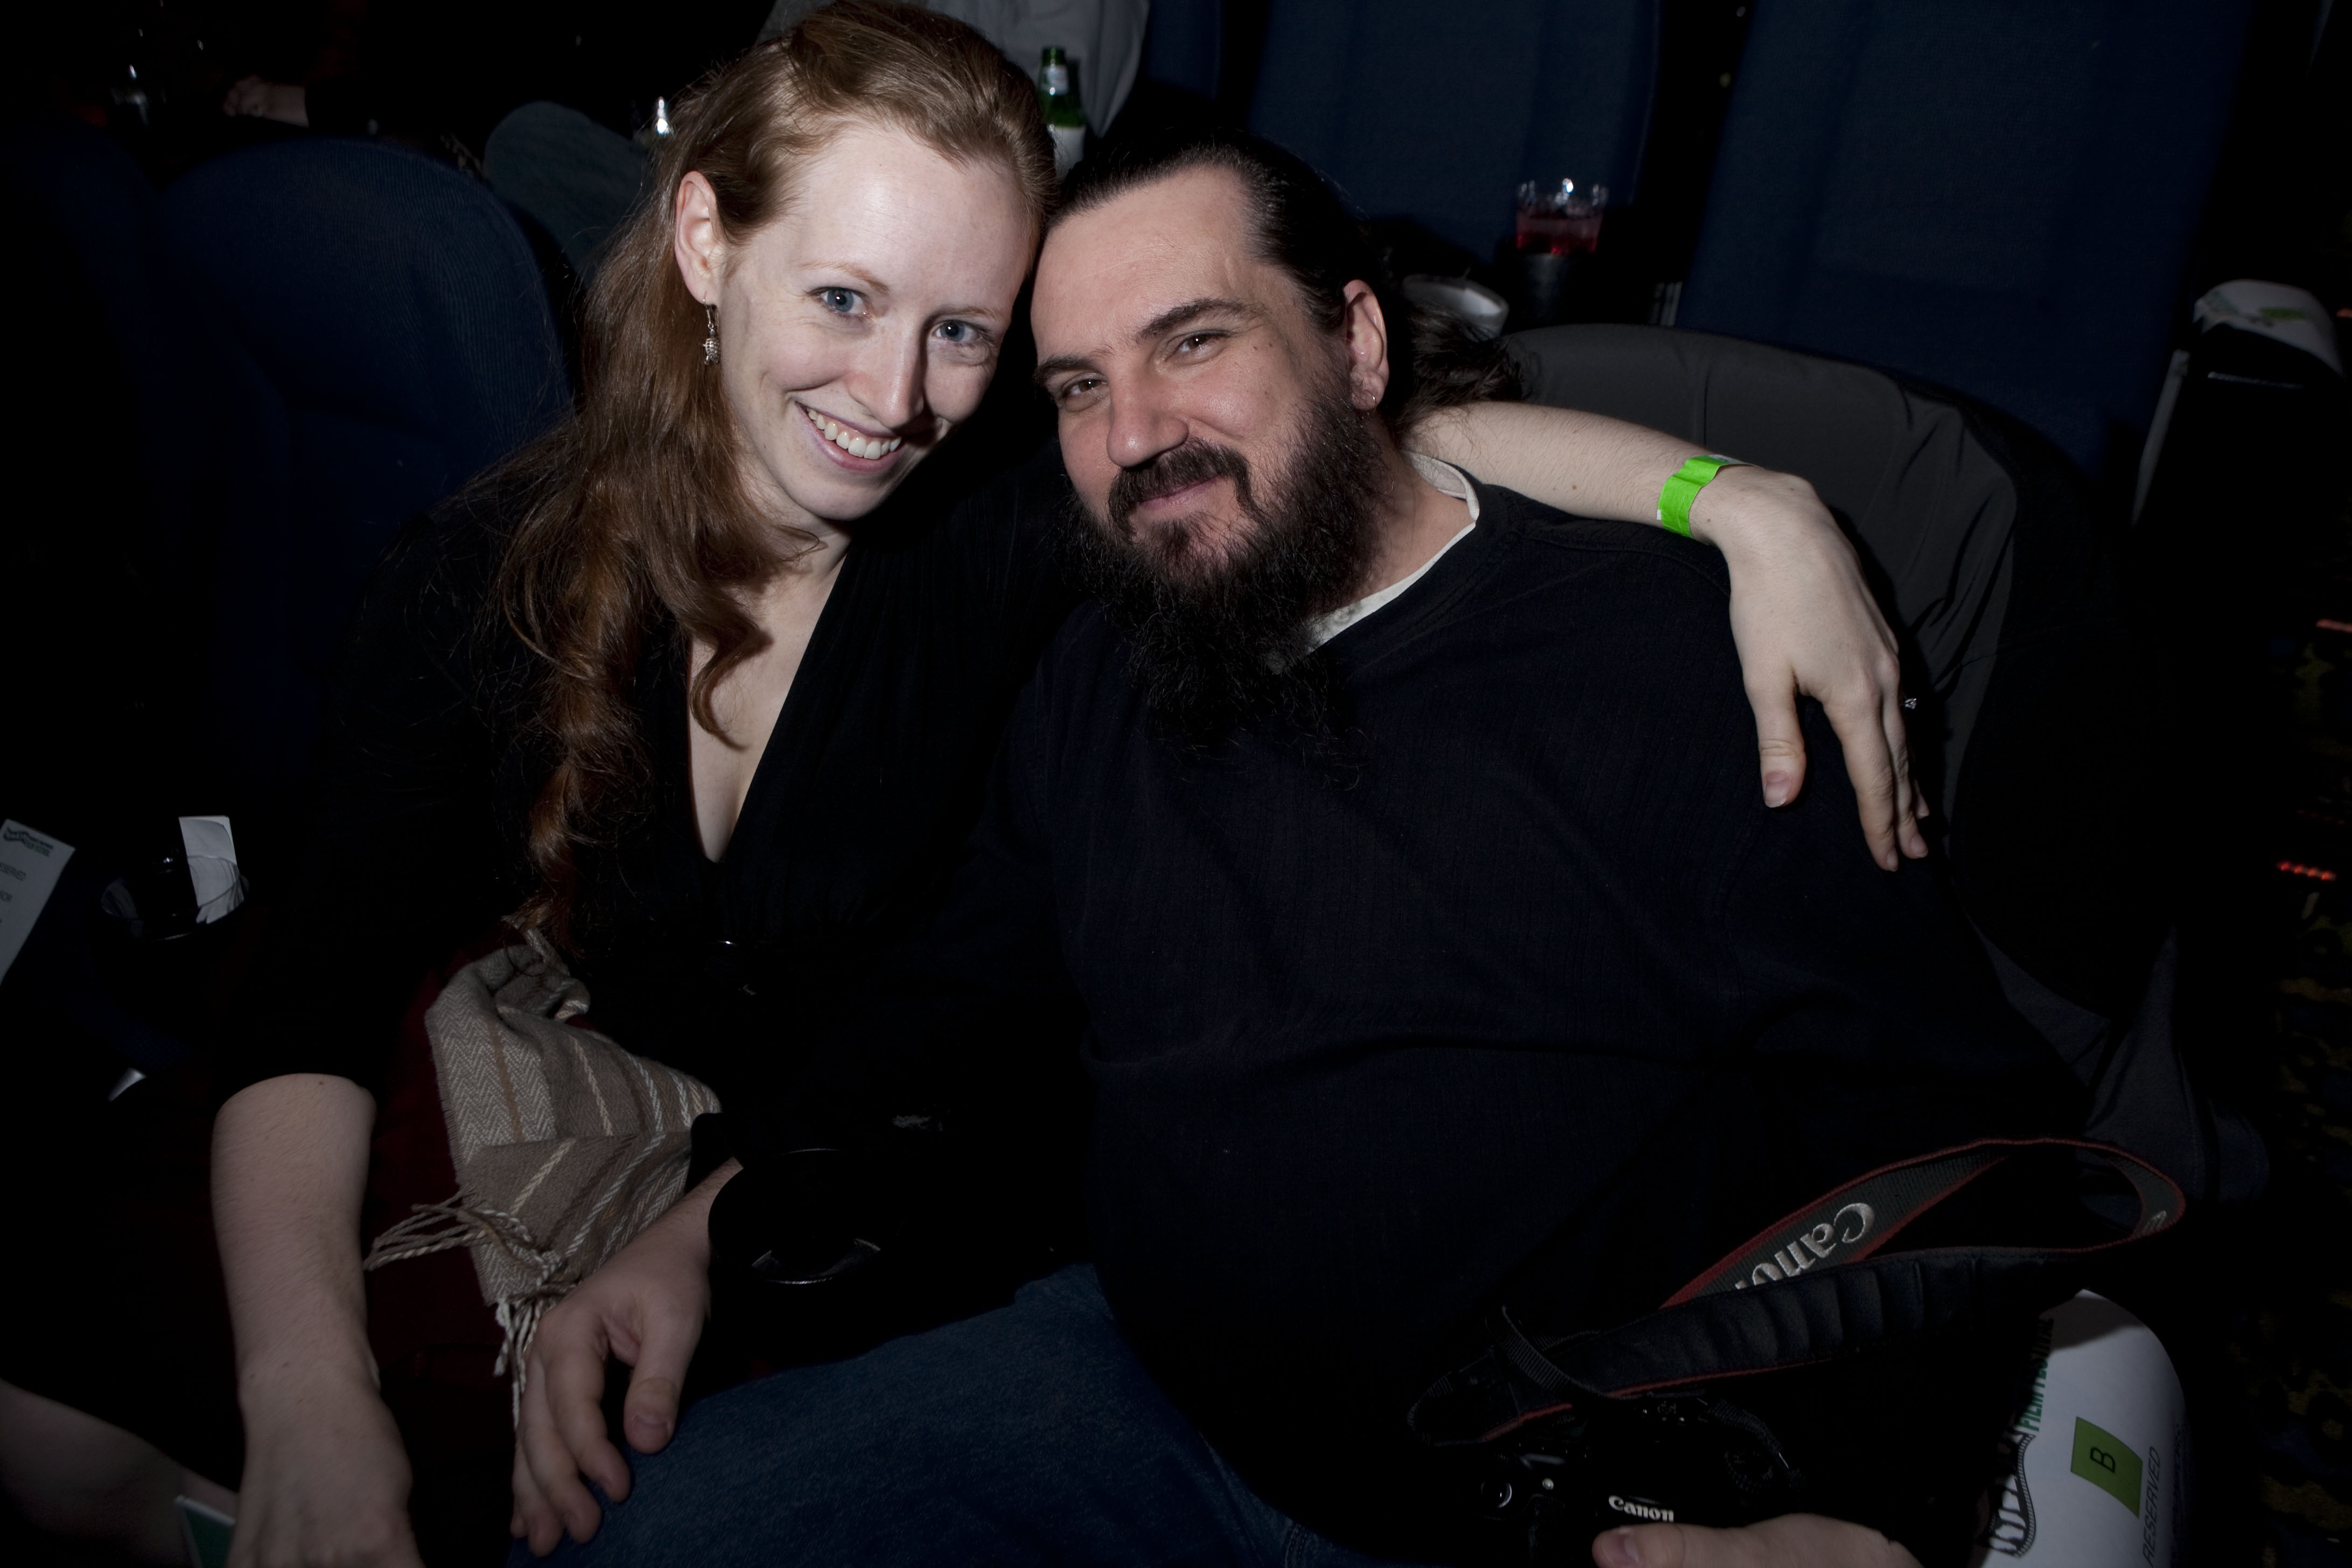 Gwydhar and Danellyn at Midwest Film Festival 2010.